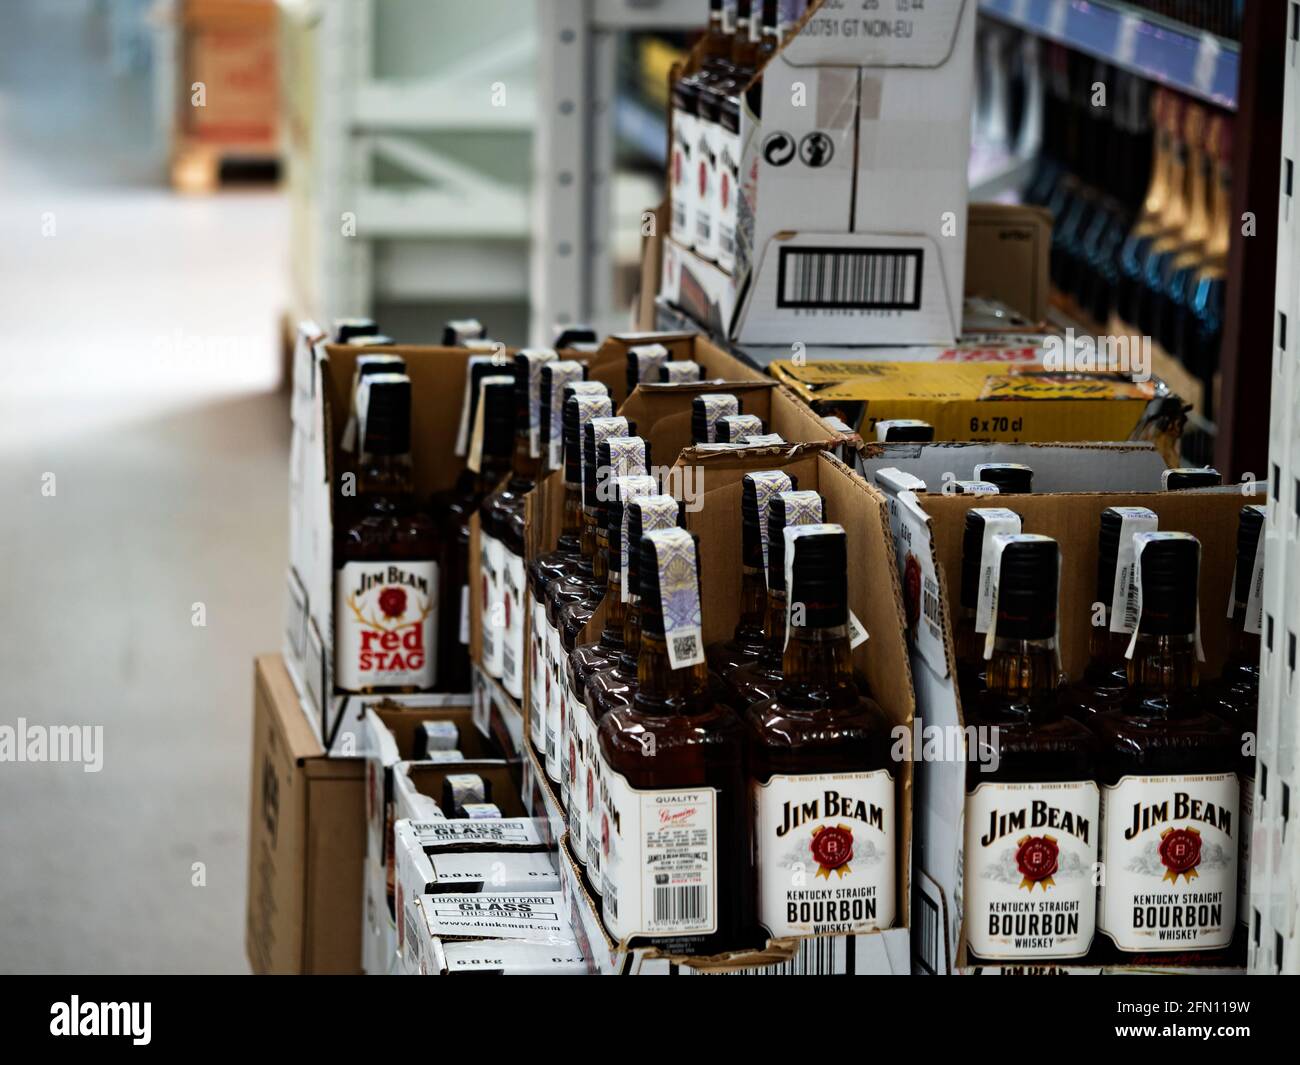 i Beam Kentucky Borubon Whiskey sur la tablette du magasin. Jim Beam est une marque de bourbon Whiskey, filiale de Suntory Holdings d'Osaka, au Japon. Banque D'Images